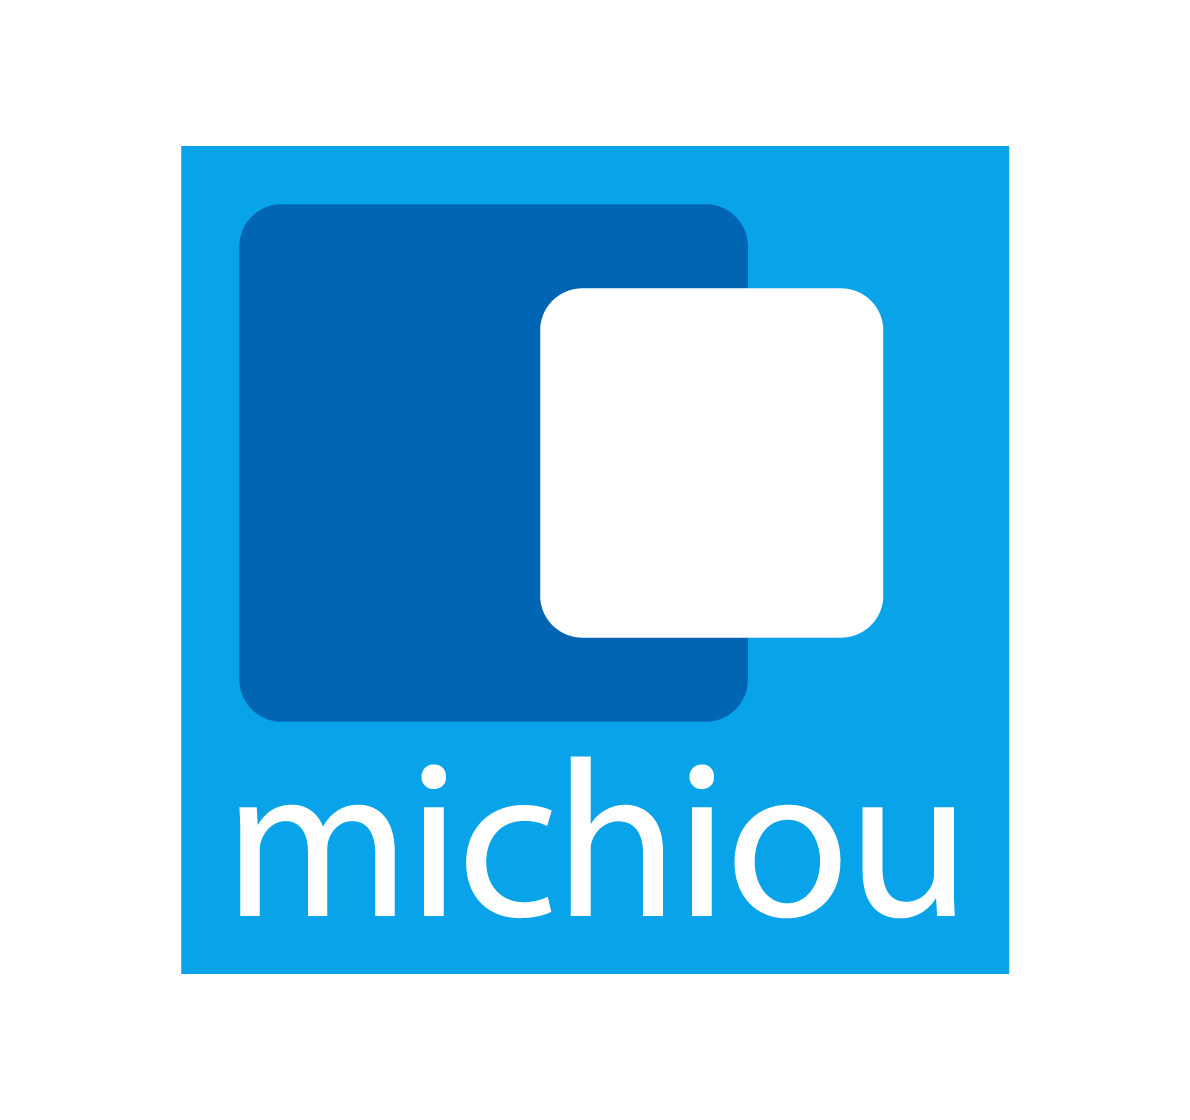 Michiou